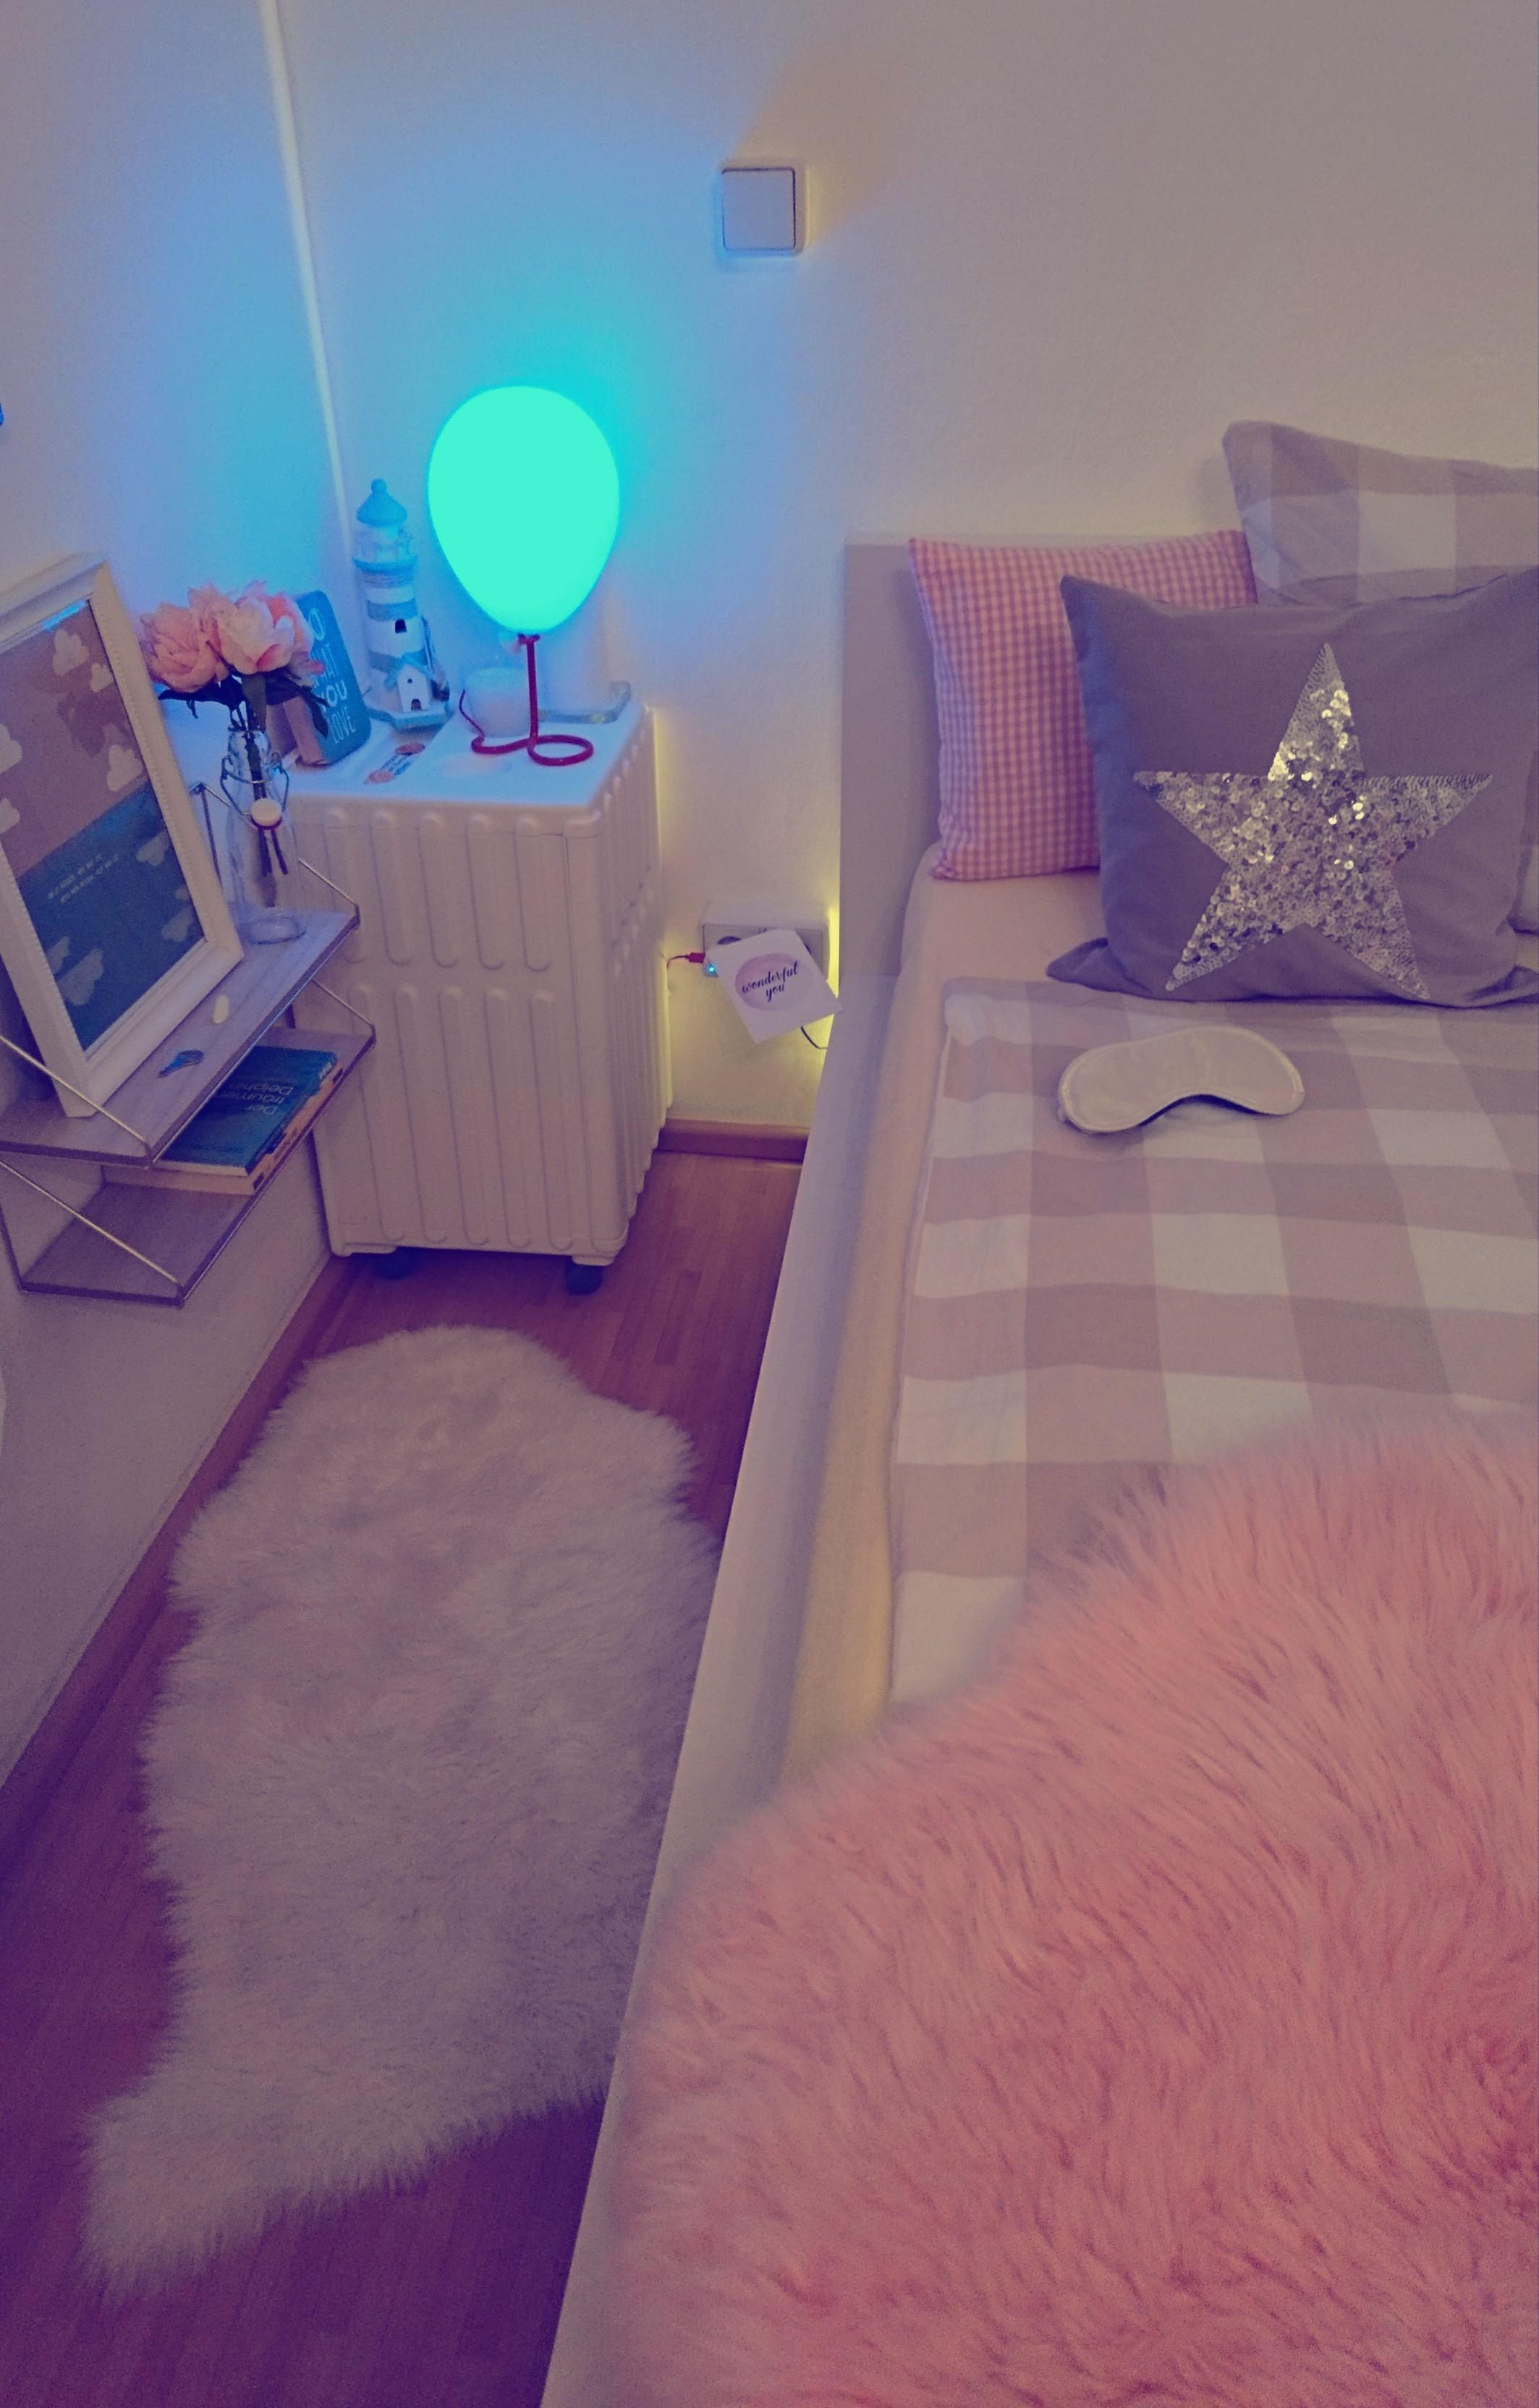 Meine #BallonLamp 🎈 am #Bett liebe ich sehr. Besonders im Farbwechsel Modus 🌈
#schlafzimmerdeko